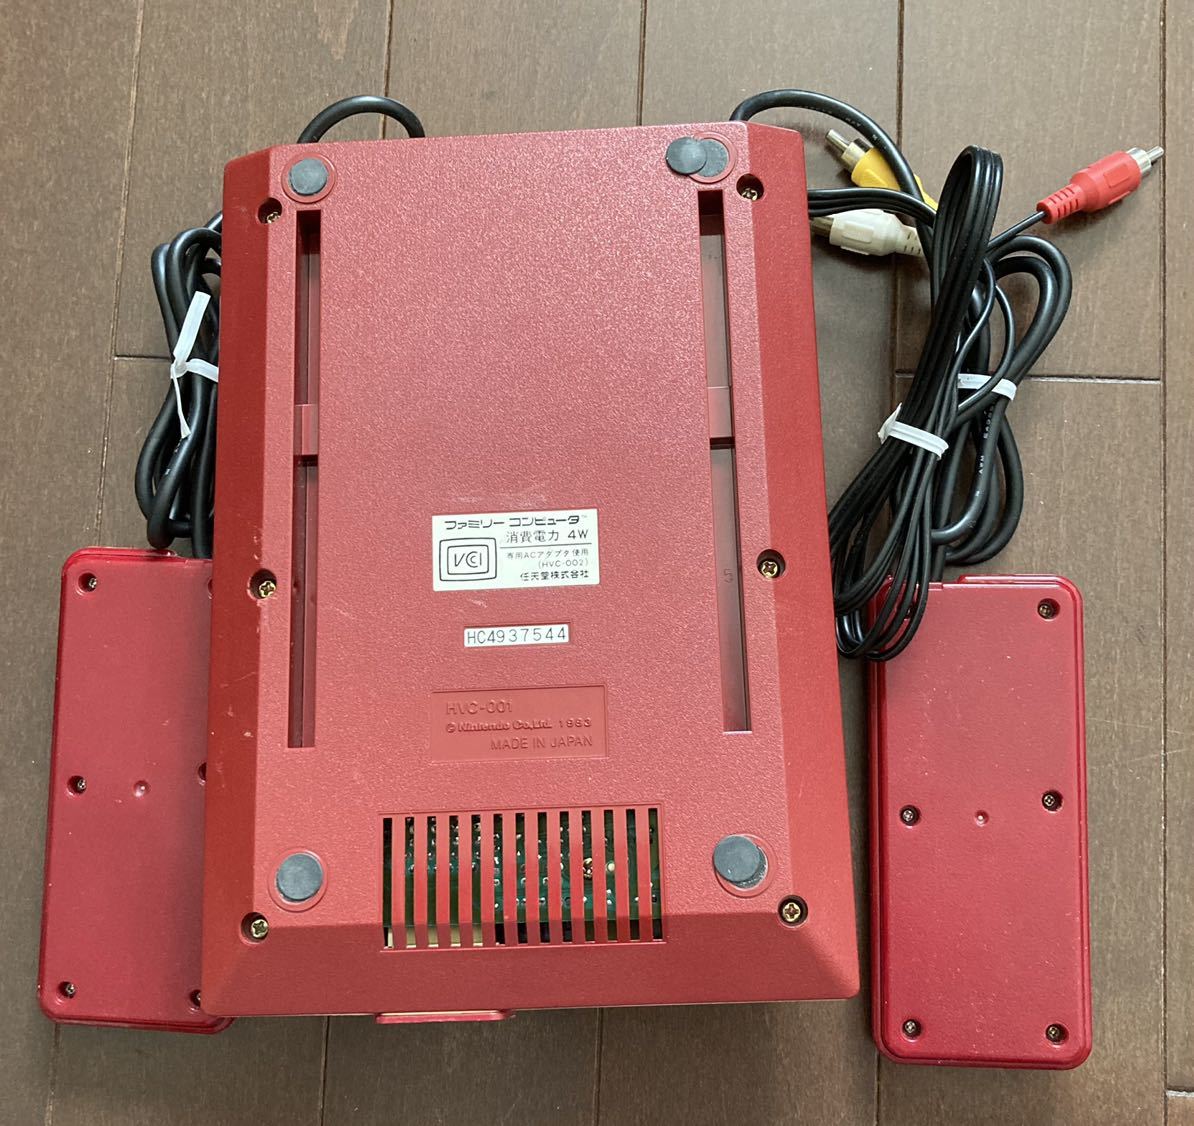 任天堂 初代 ファミコン HVC-001 本体のみ ジャンク品 送料無料